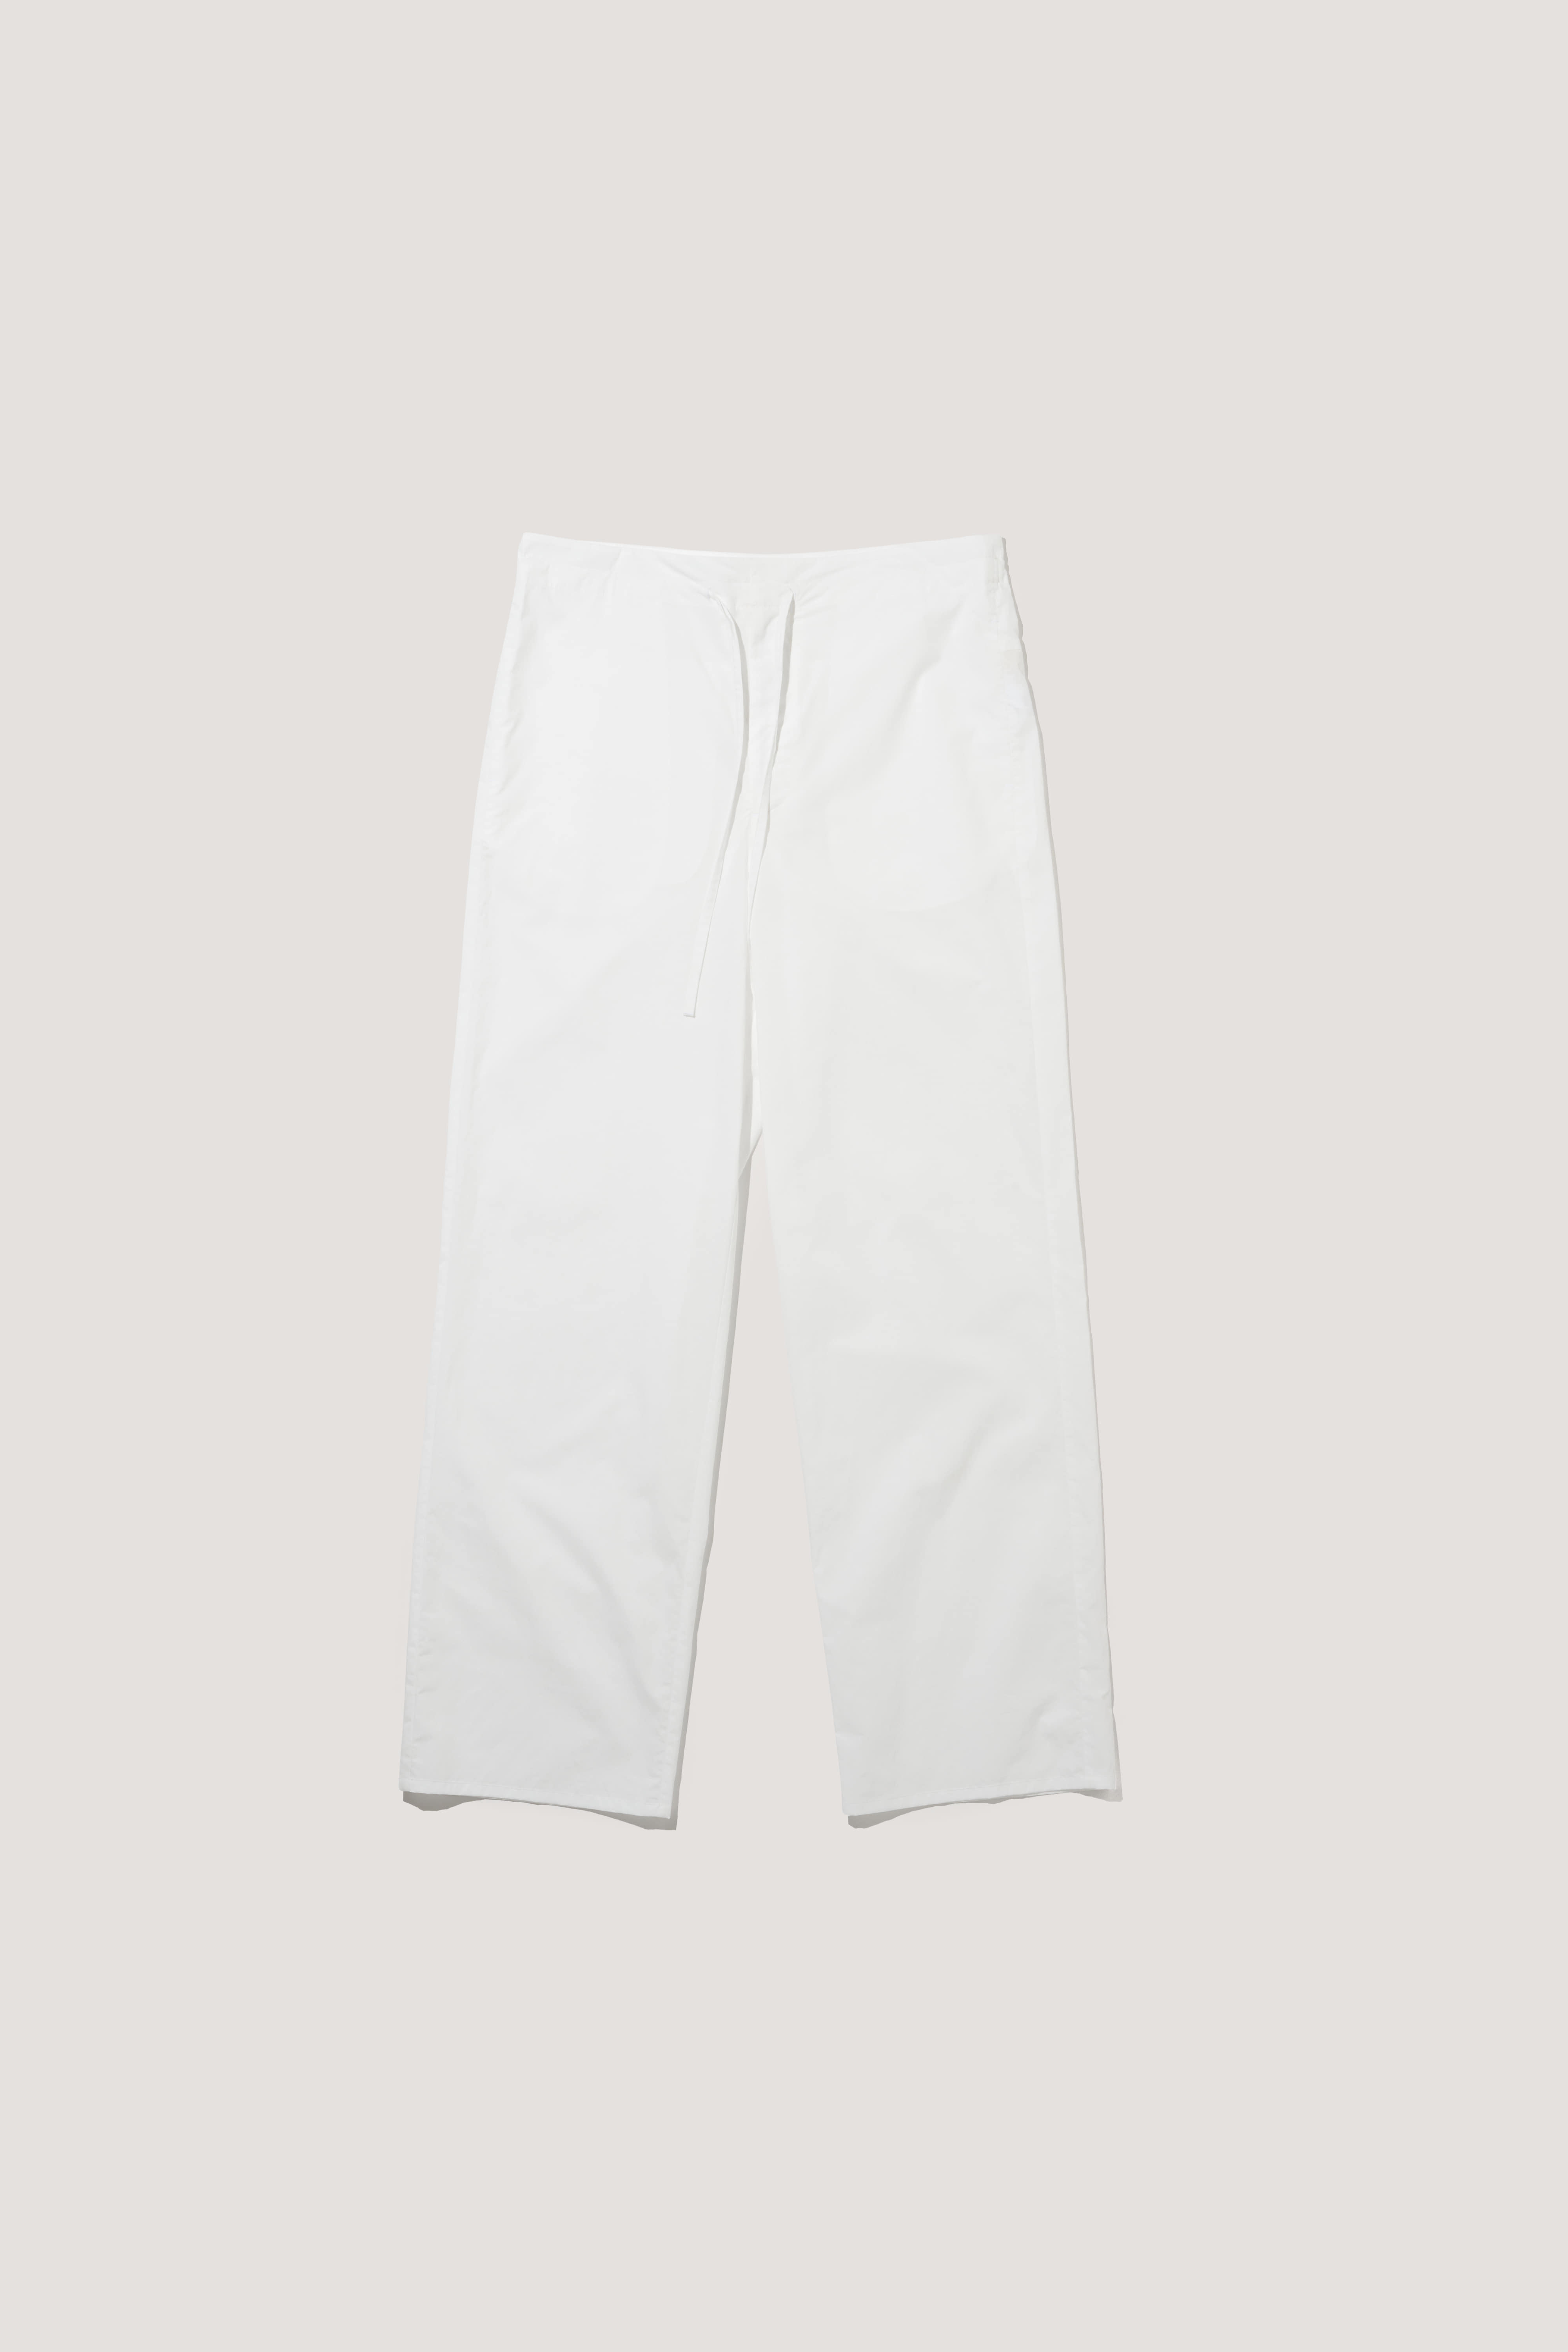 Strap Cotton Pants [white]